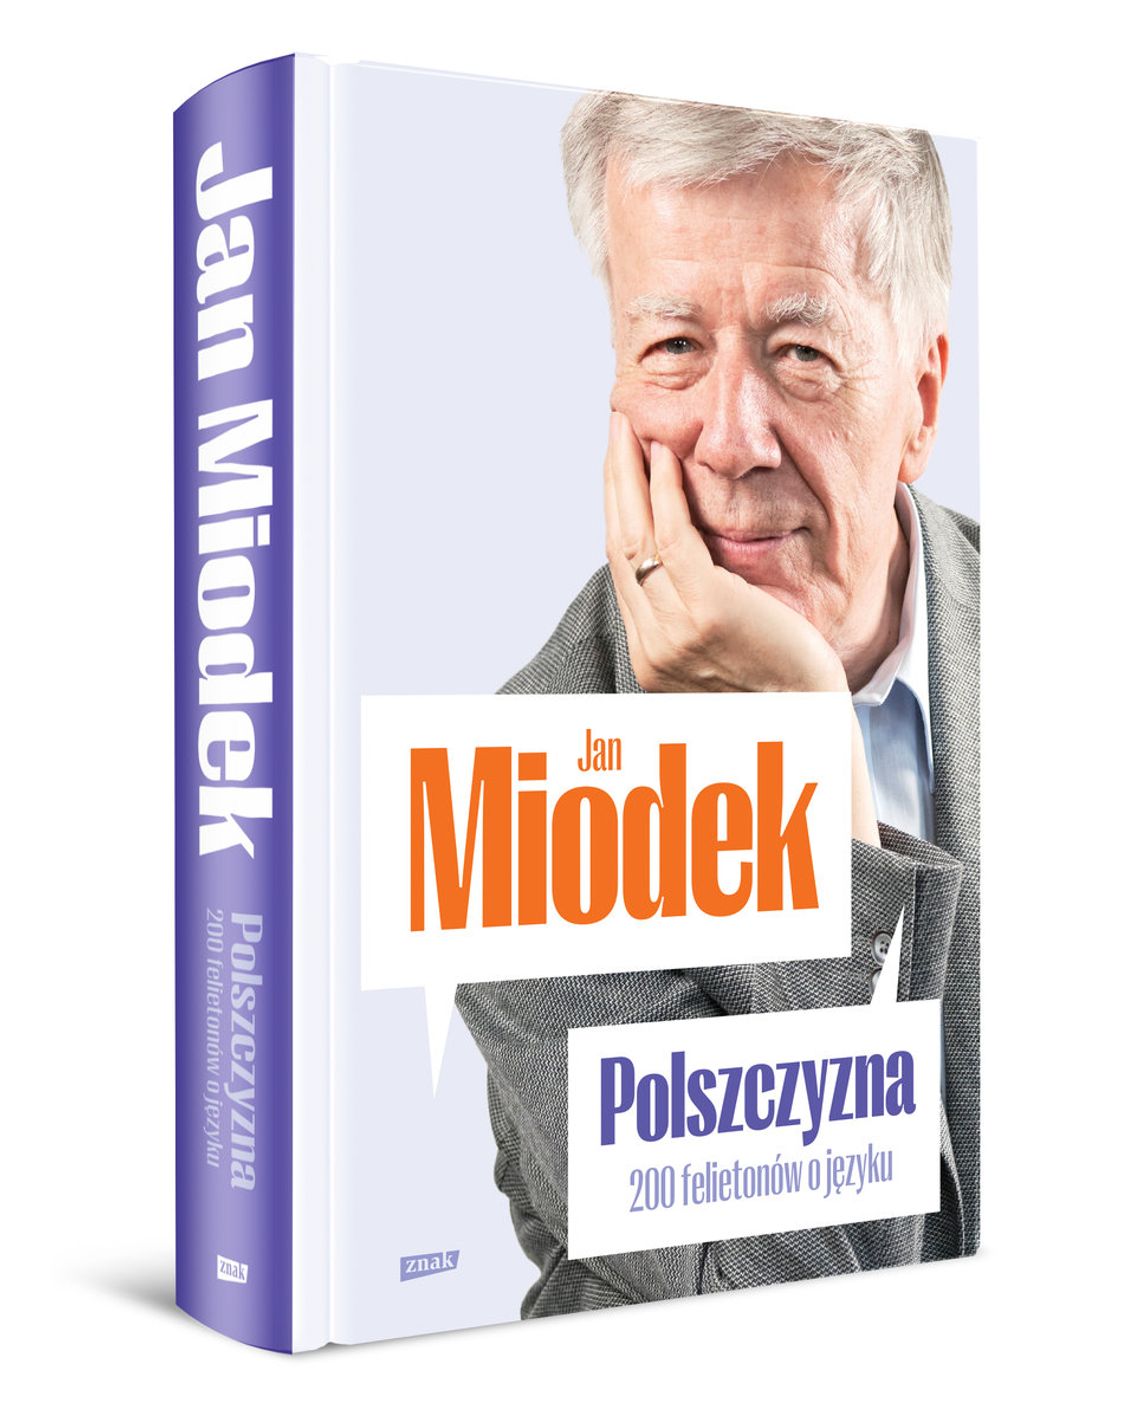 "Polszczyzna. 200 felietonów o języku" - Jan Miodek - Wydawnictwo Znak